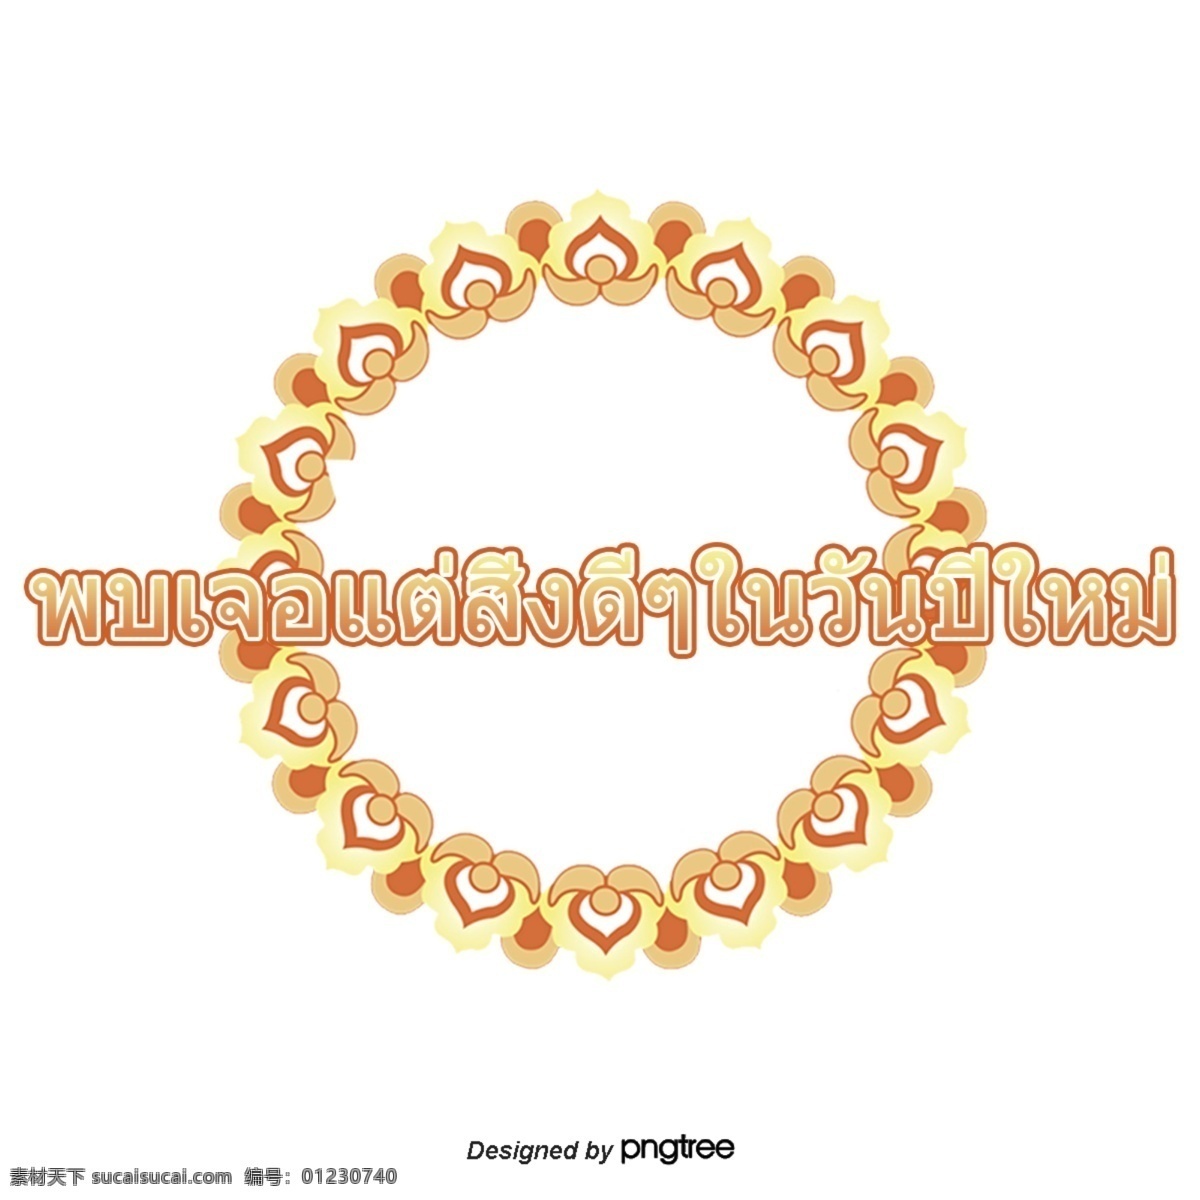 泰国 文字 字体 浅黄 棕色 新年 好 可溶性 糖 呈 淡 黄色 圆圈